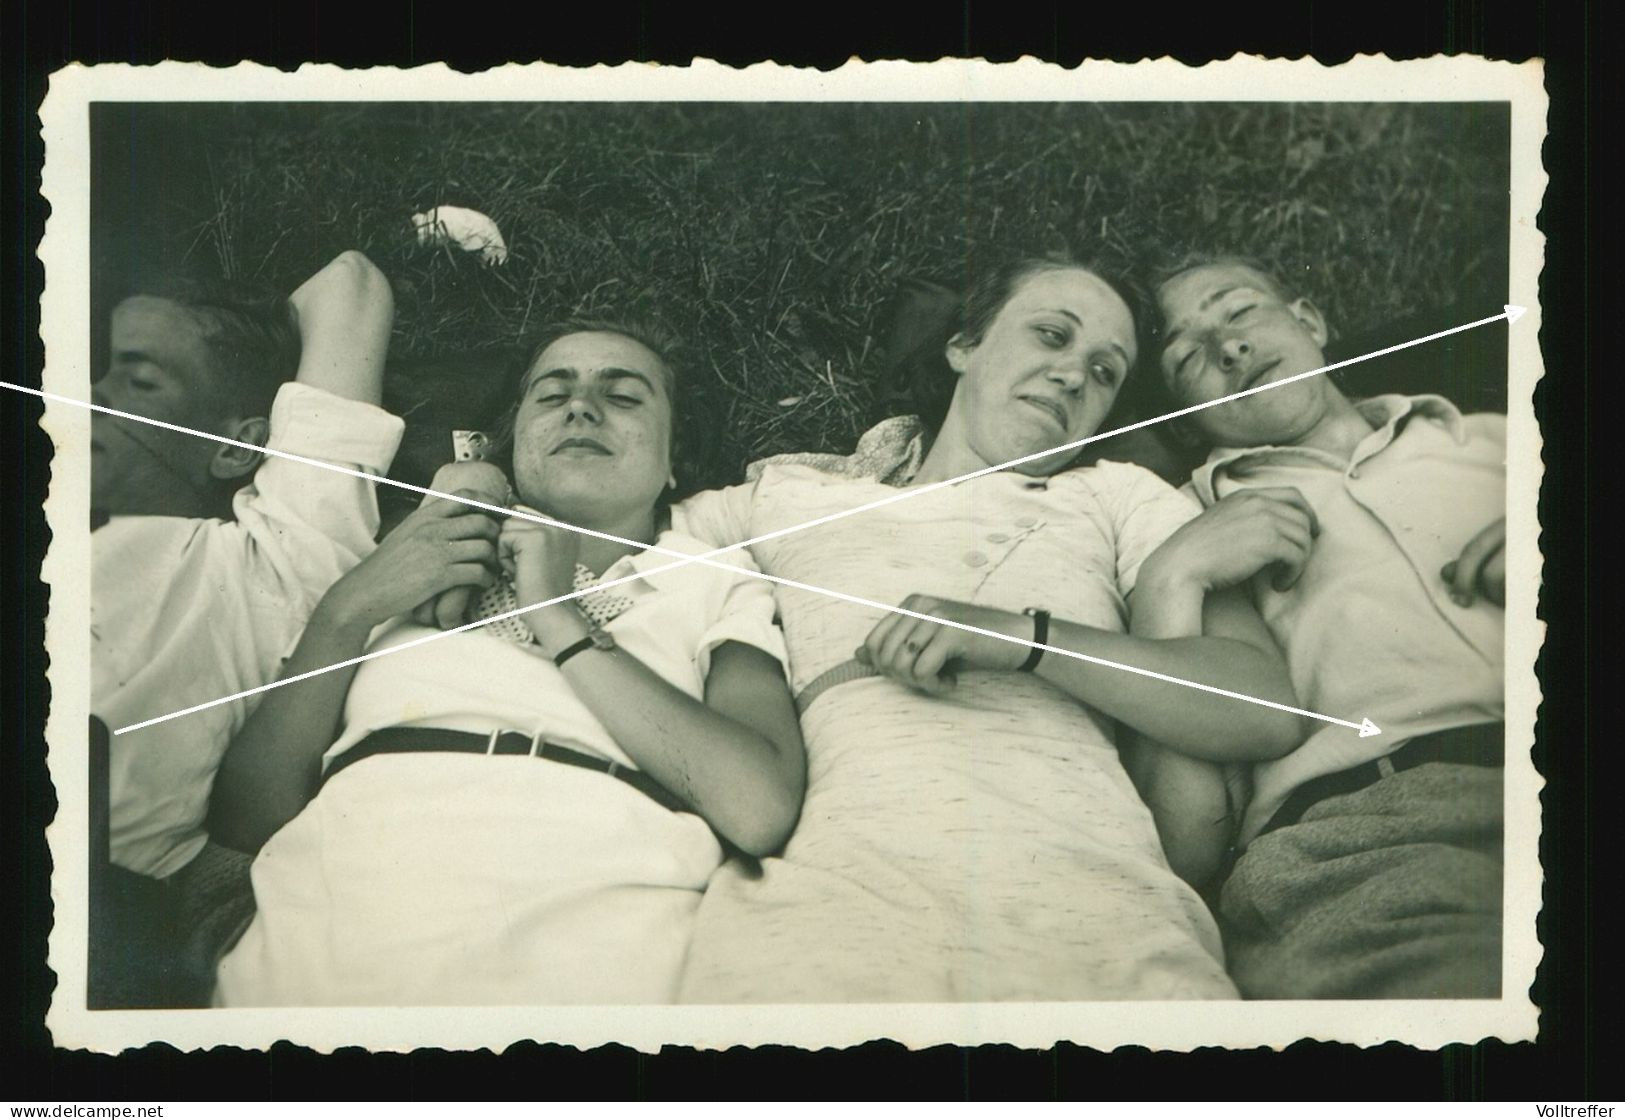 Orig. Foto 1934 Süße Mädchen & Jungs Liegen Zusammen Im Gras, Cute Girls & Boys Lie Together On The Grass, Teenager - Anonieme Personen